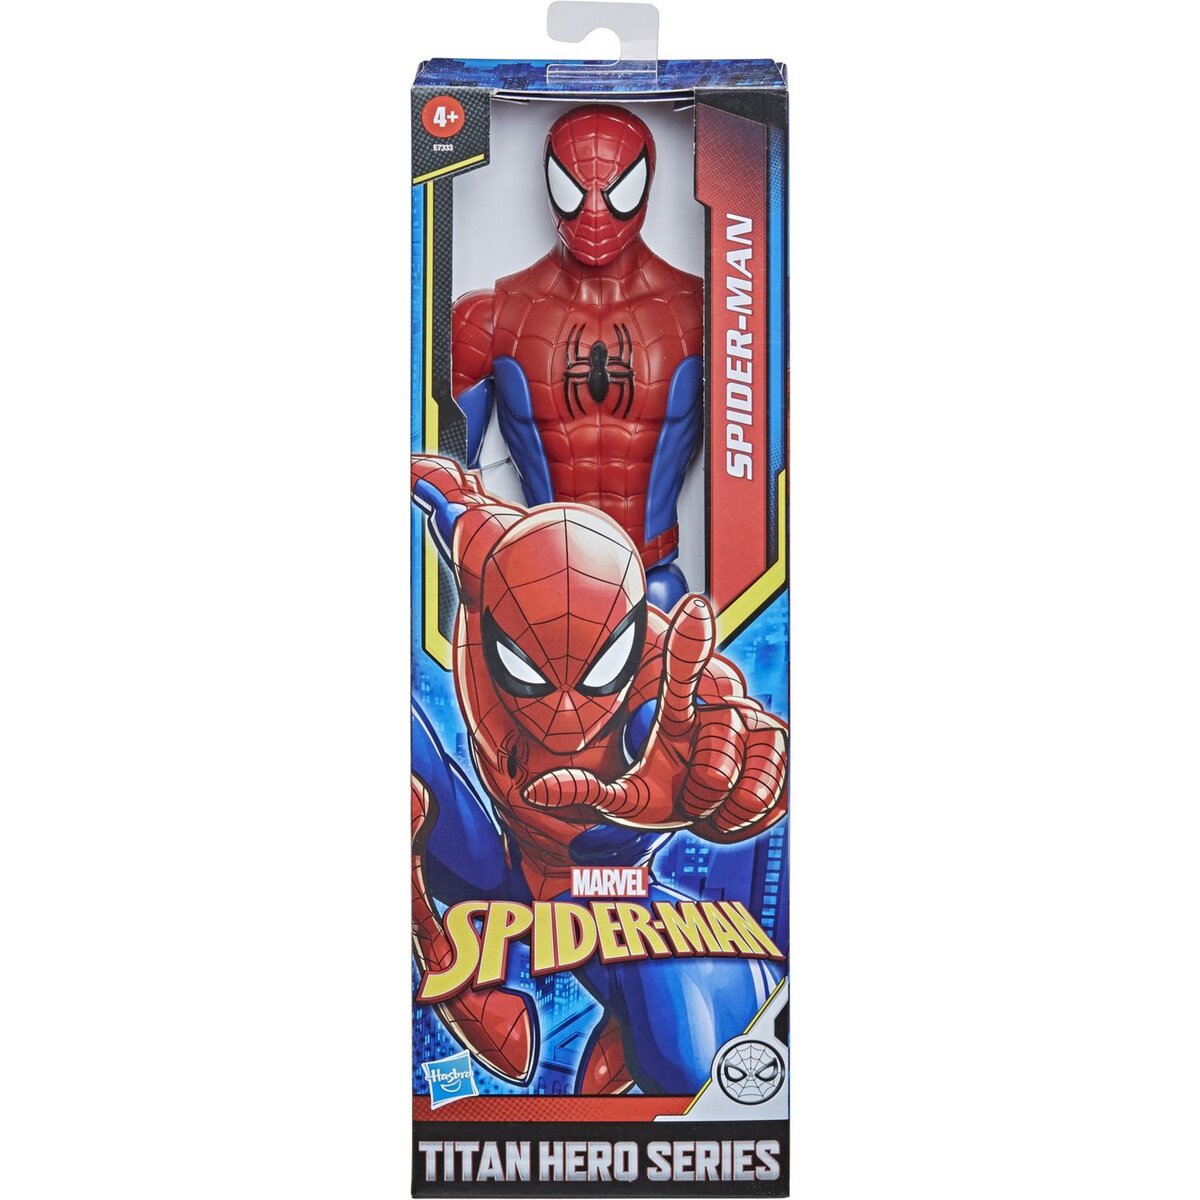 Acheter Combinaison Spiderman , 2-3 ans en ligne?